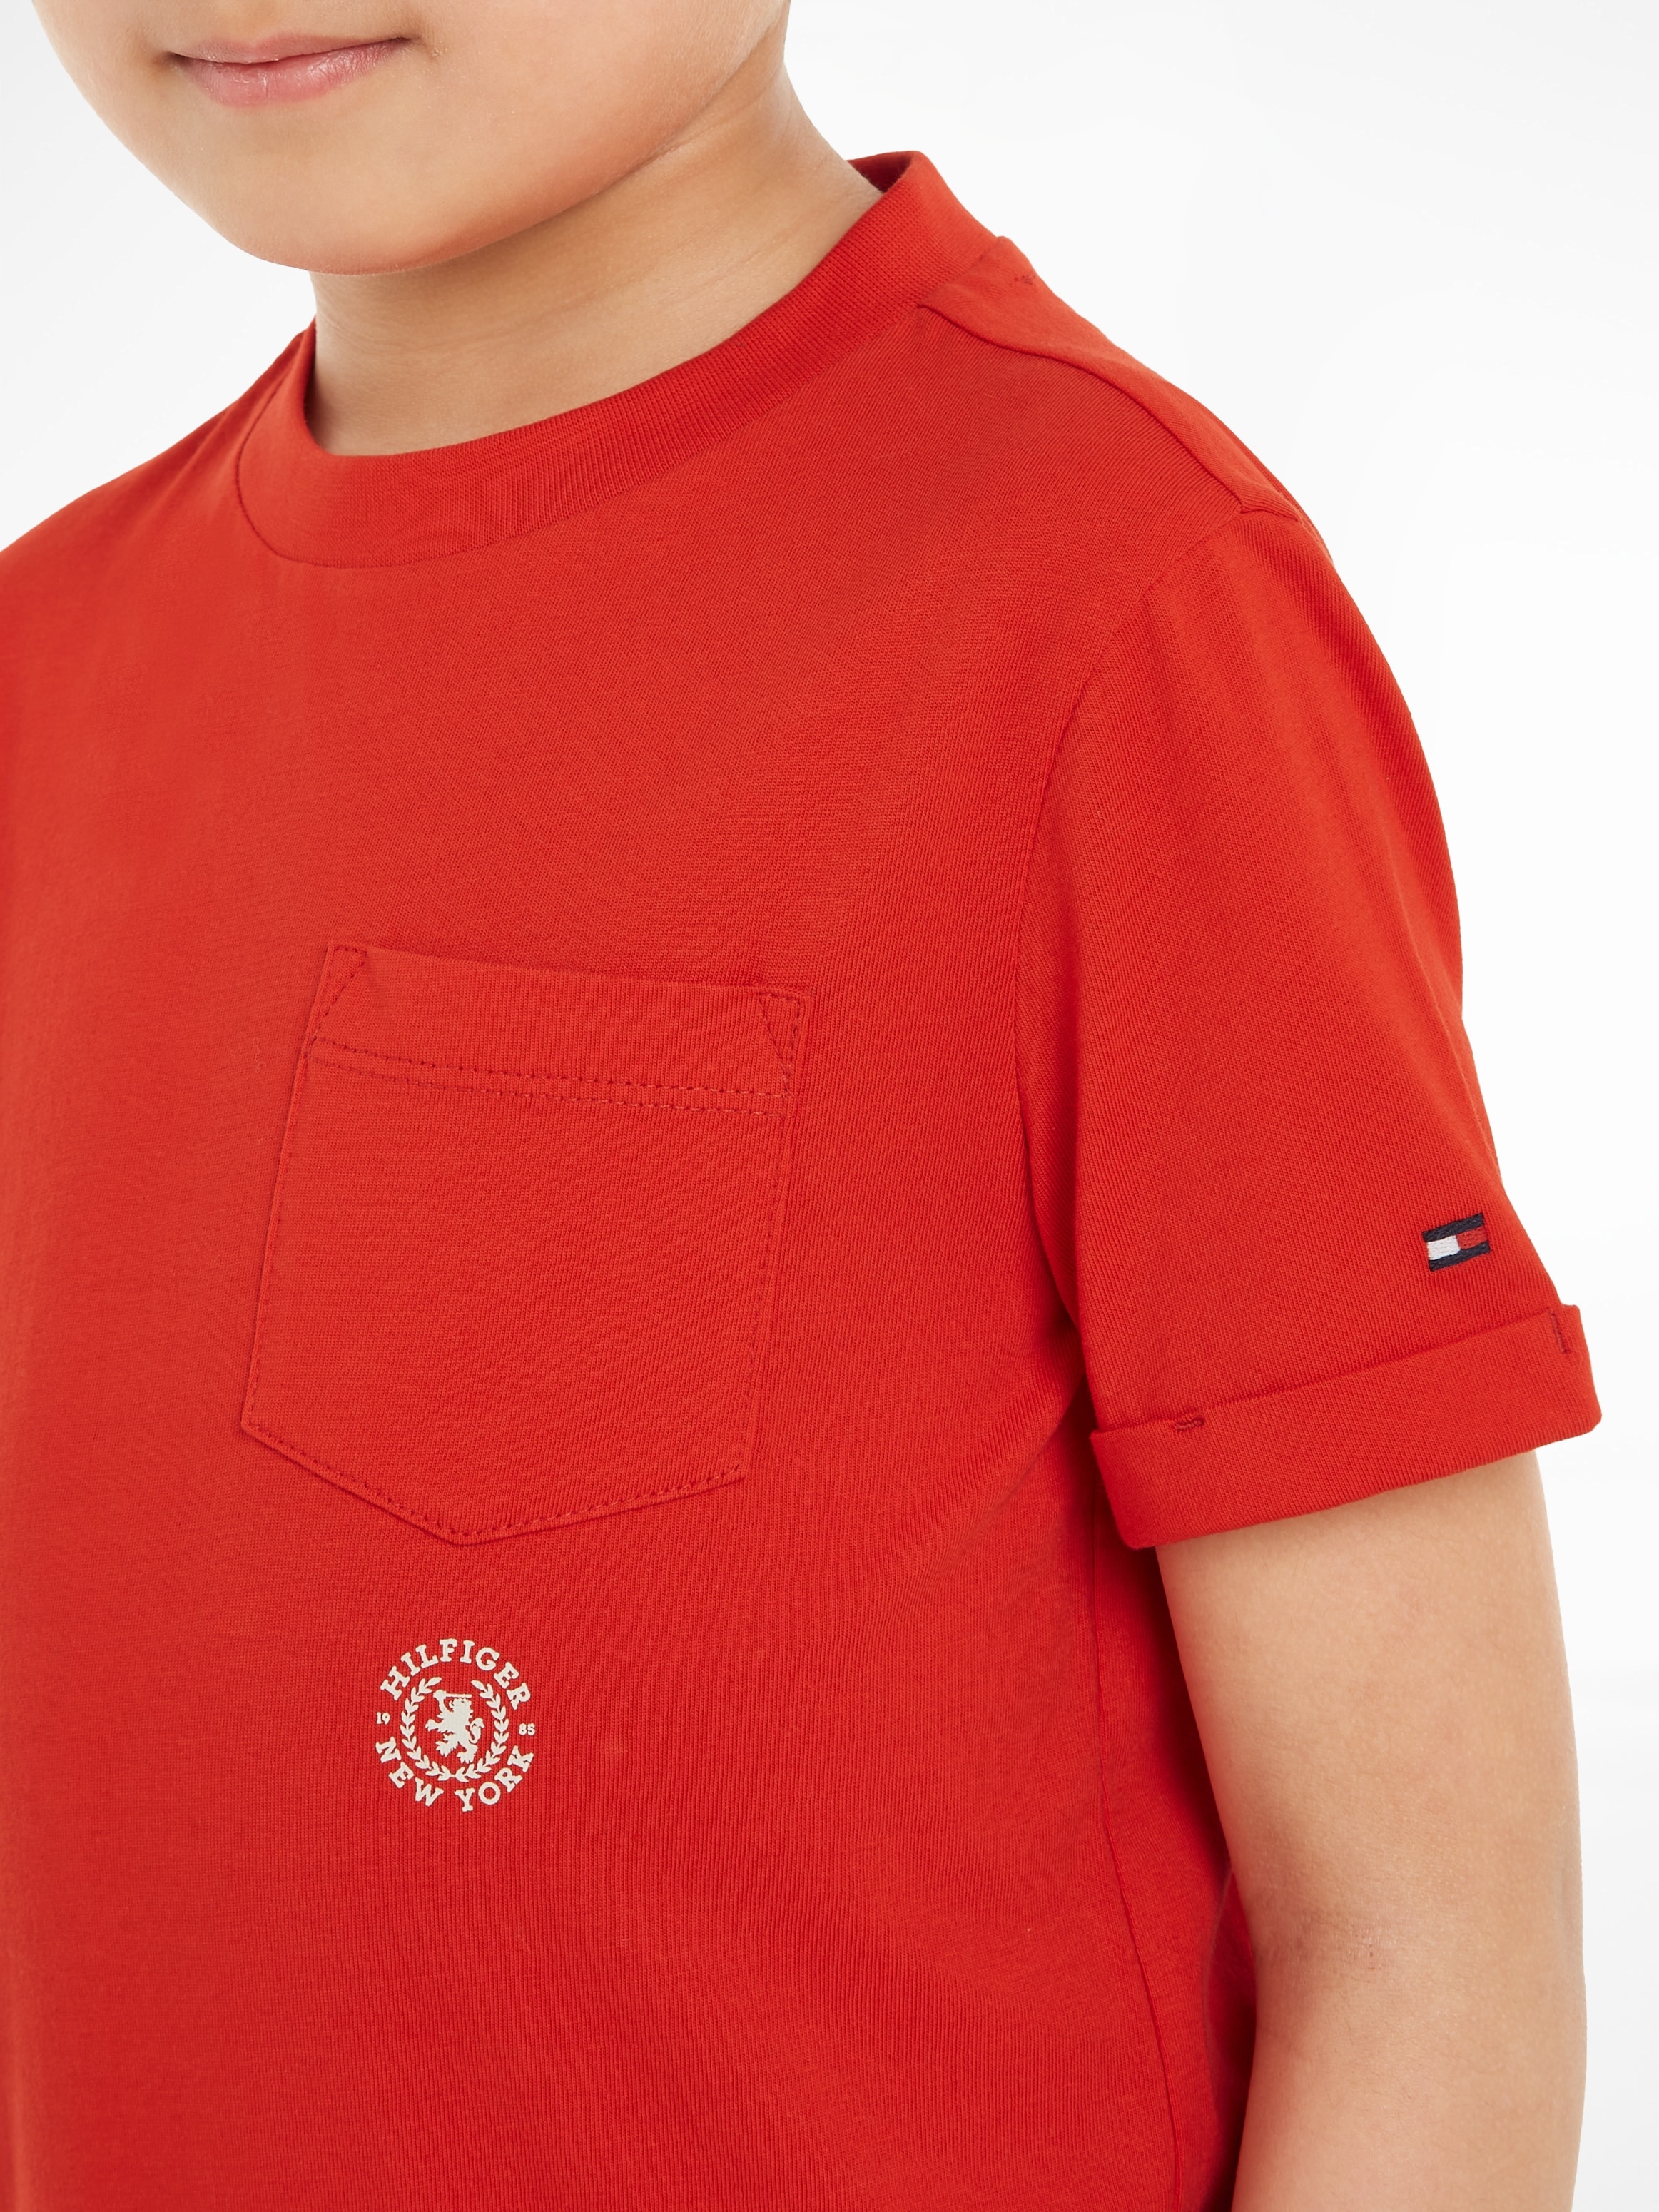 »CREST POCKET Hilfiger LOGO S/S«, T-Shirt OTTO mit TEE Brusttasche bei Tommy